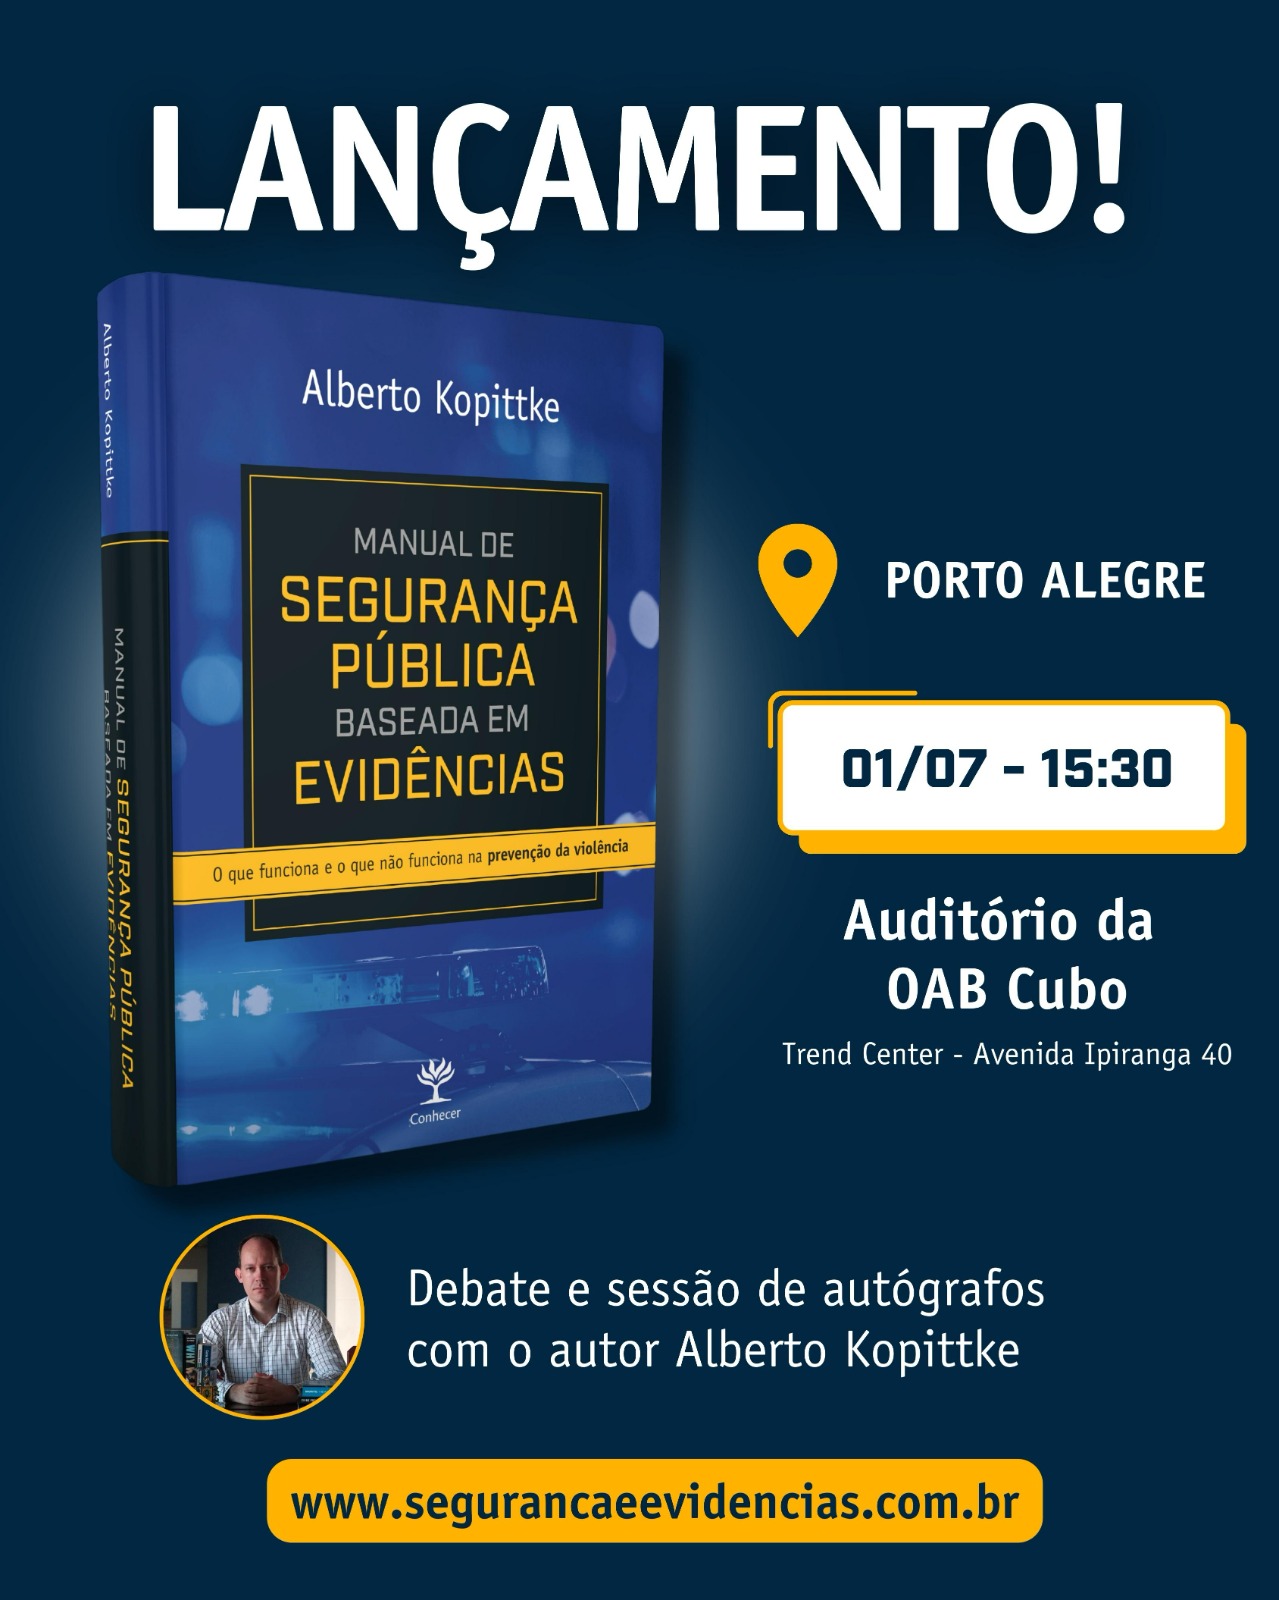 Livro sobre segurança pública no Brasil será lançado no dia 01° de julho, em Porto Alegre